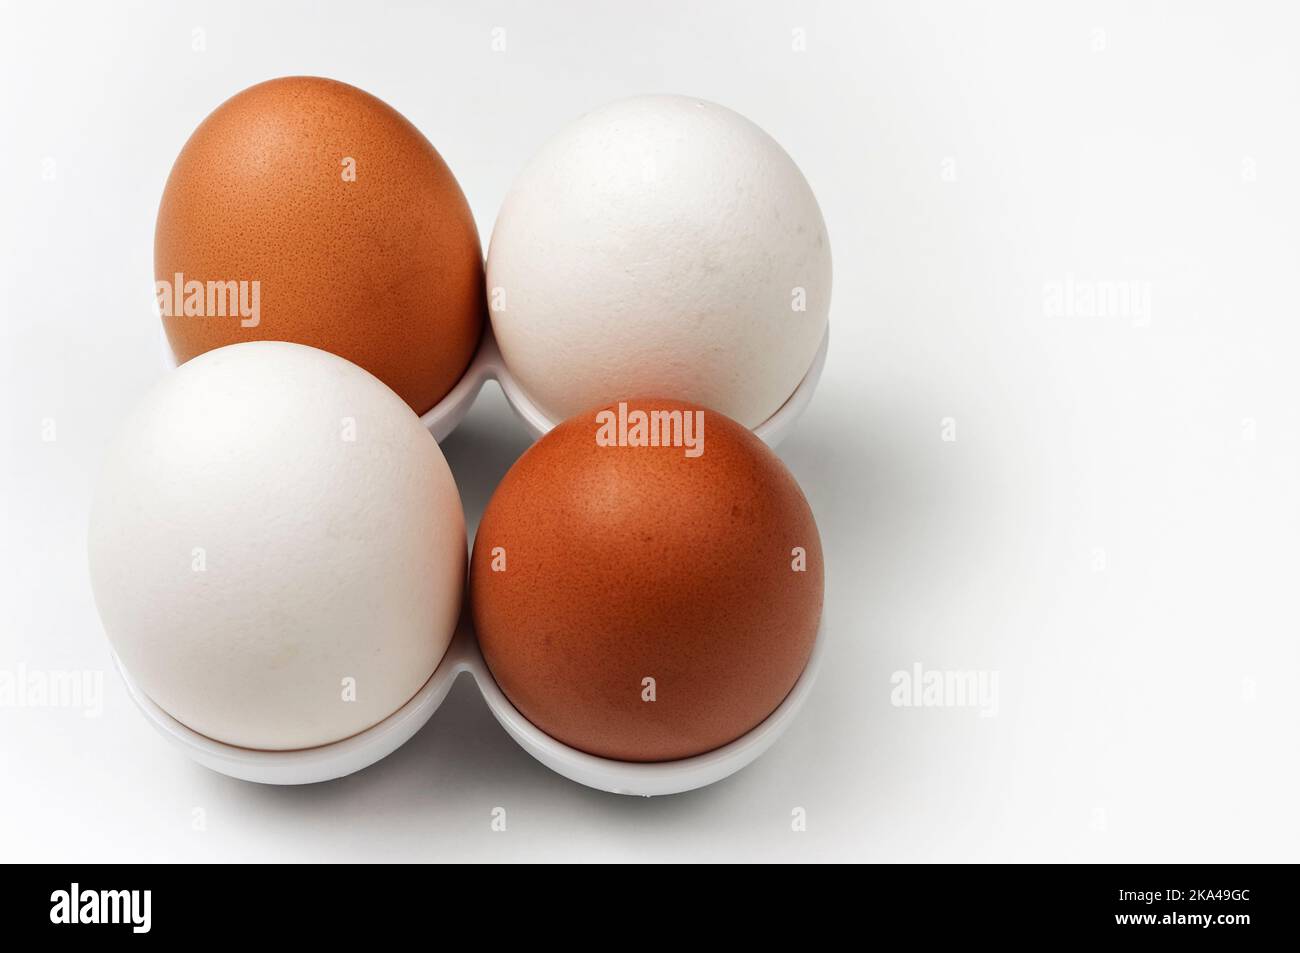 Deux œufs biologiques blancs et deux œufs biologiques bruns provenant de poulets de liberté. Banque D'Images